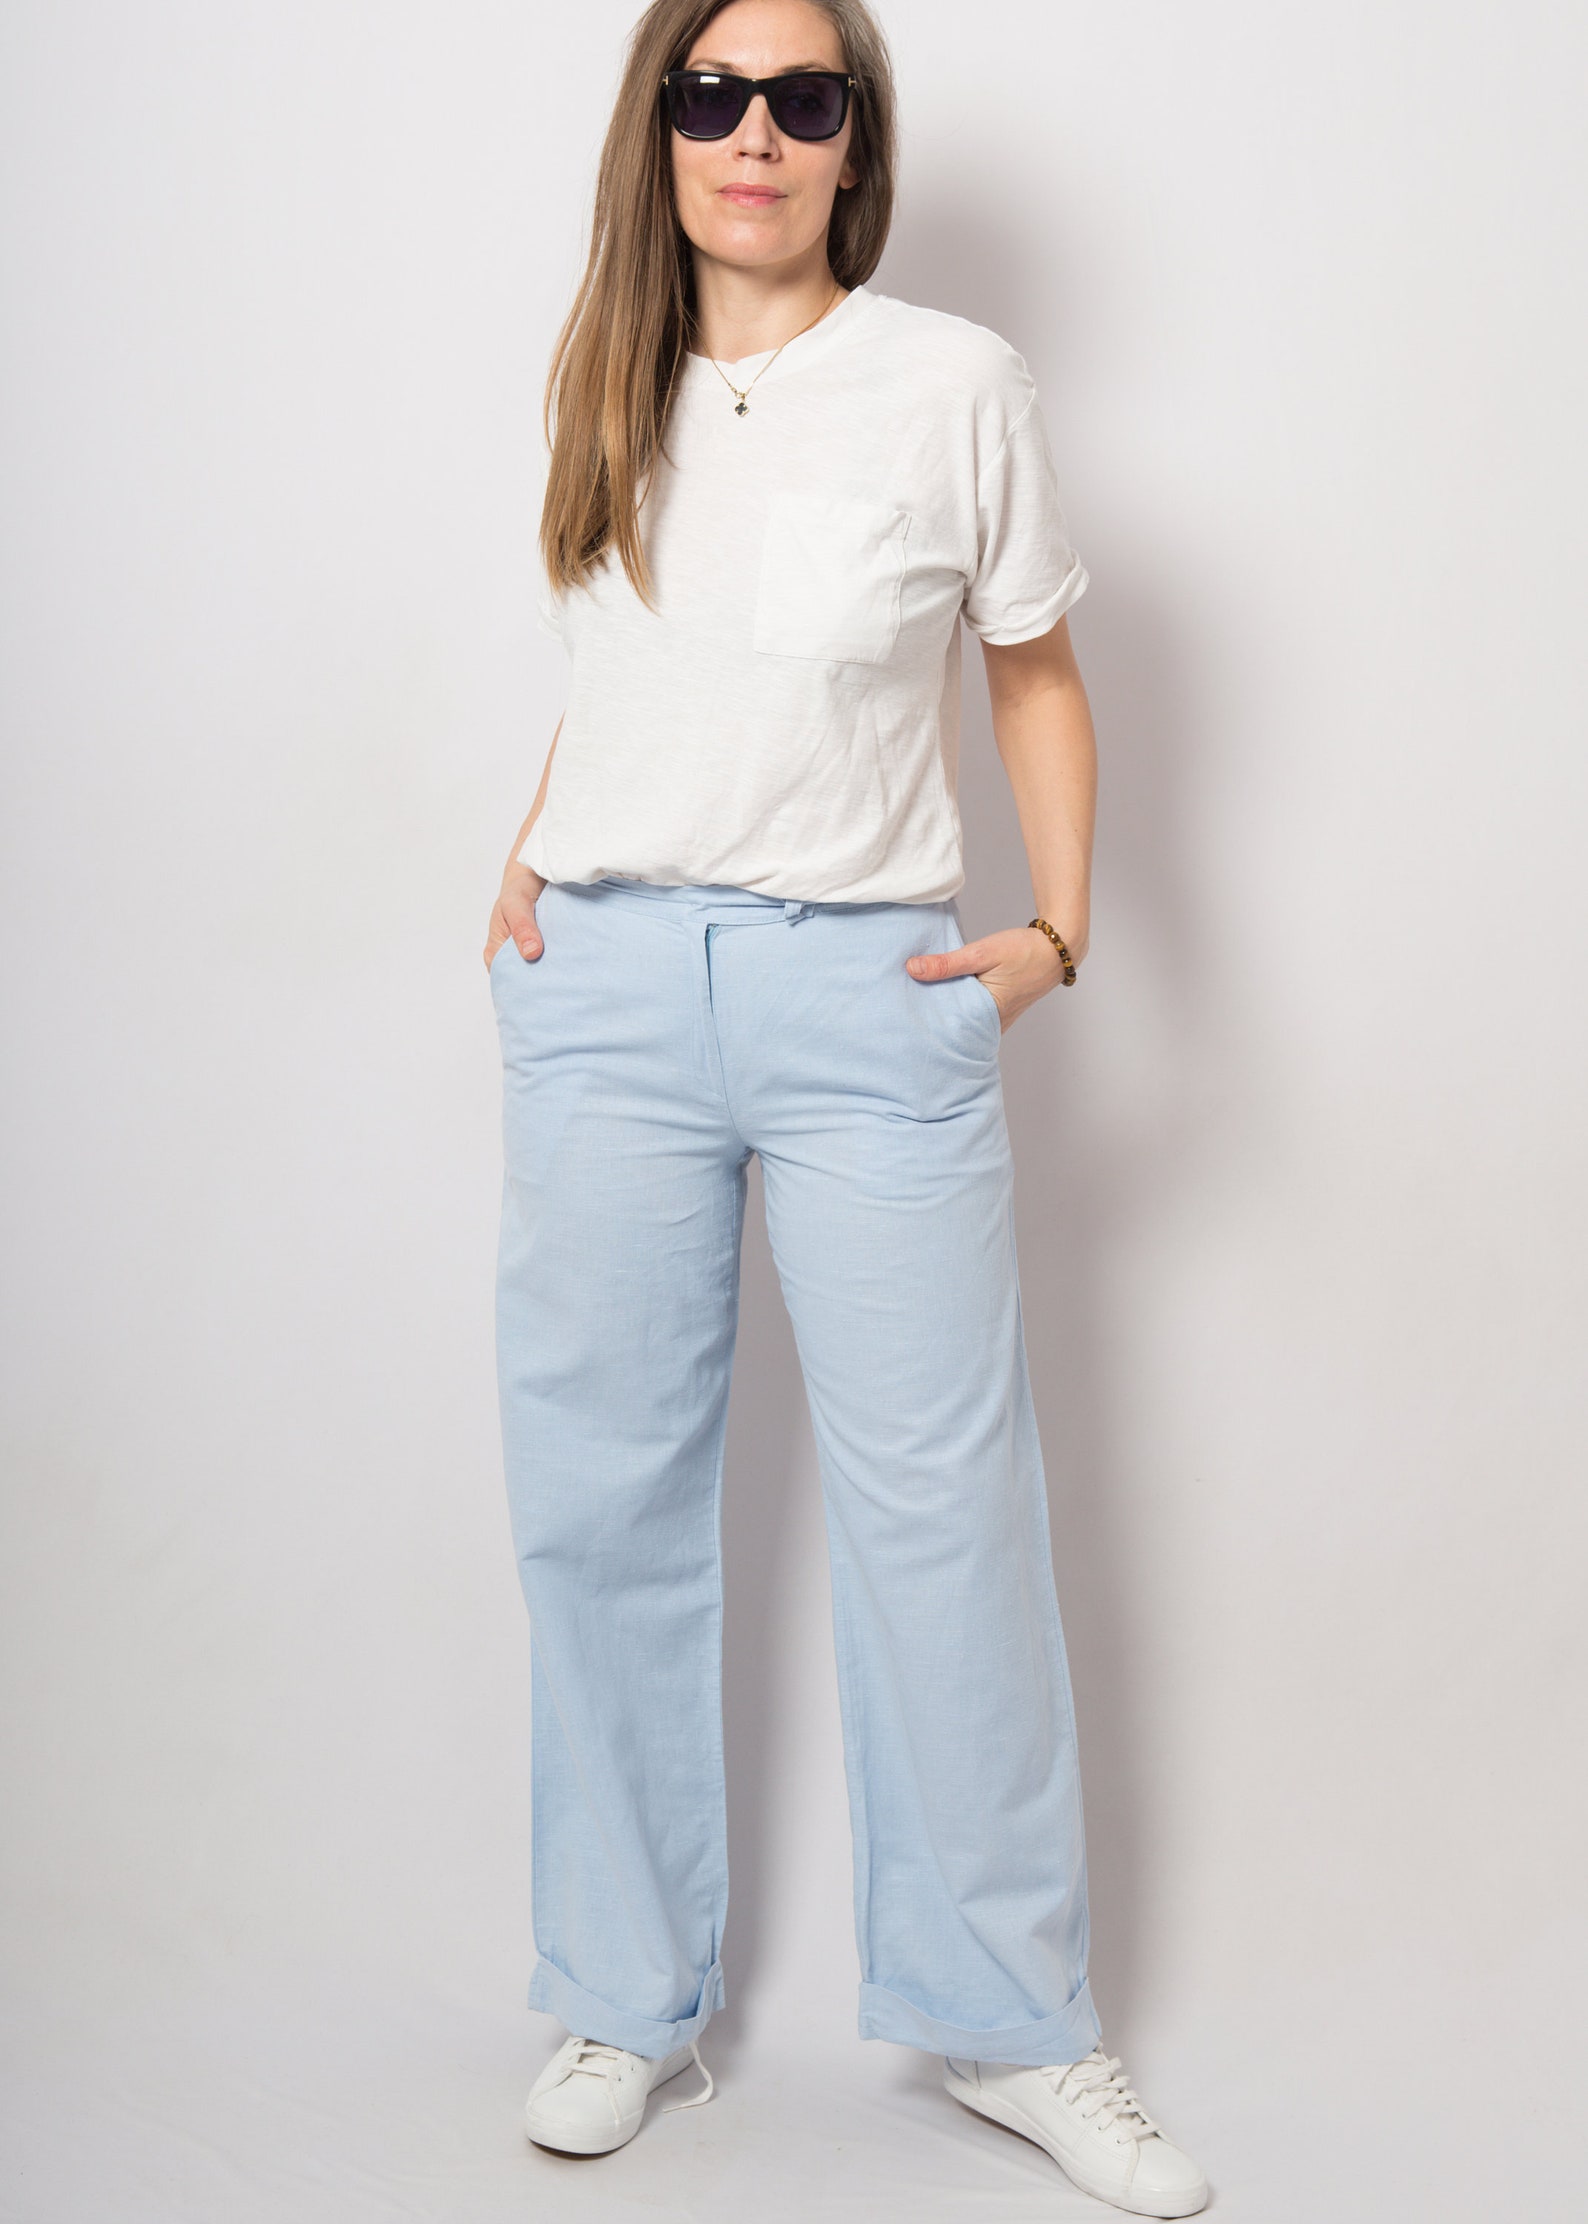 Sky Blue Wide Linen Trousers Linen Pants Elegant Plain Casual | Etsy